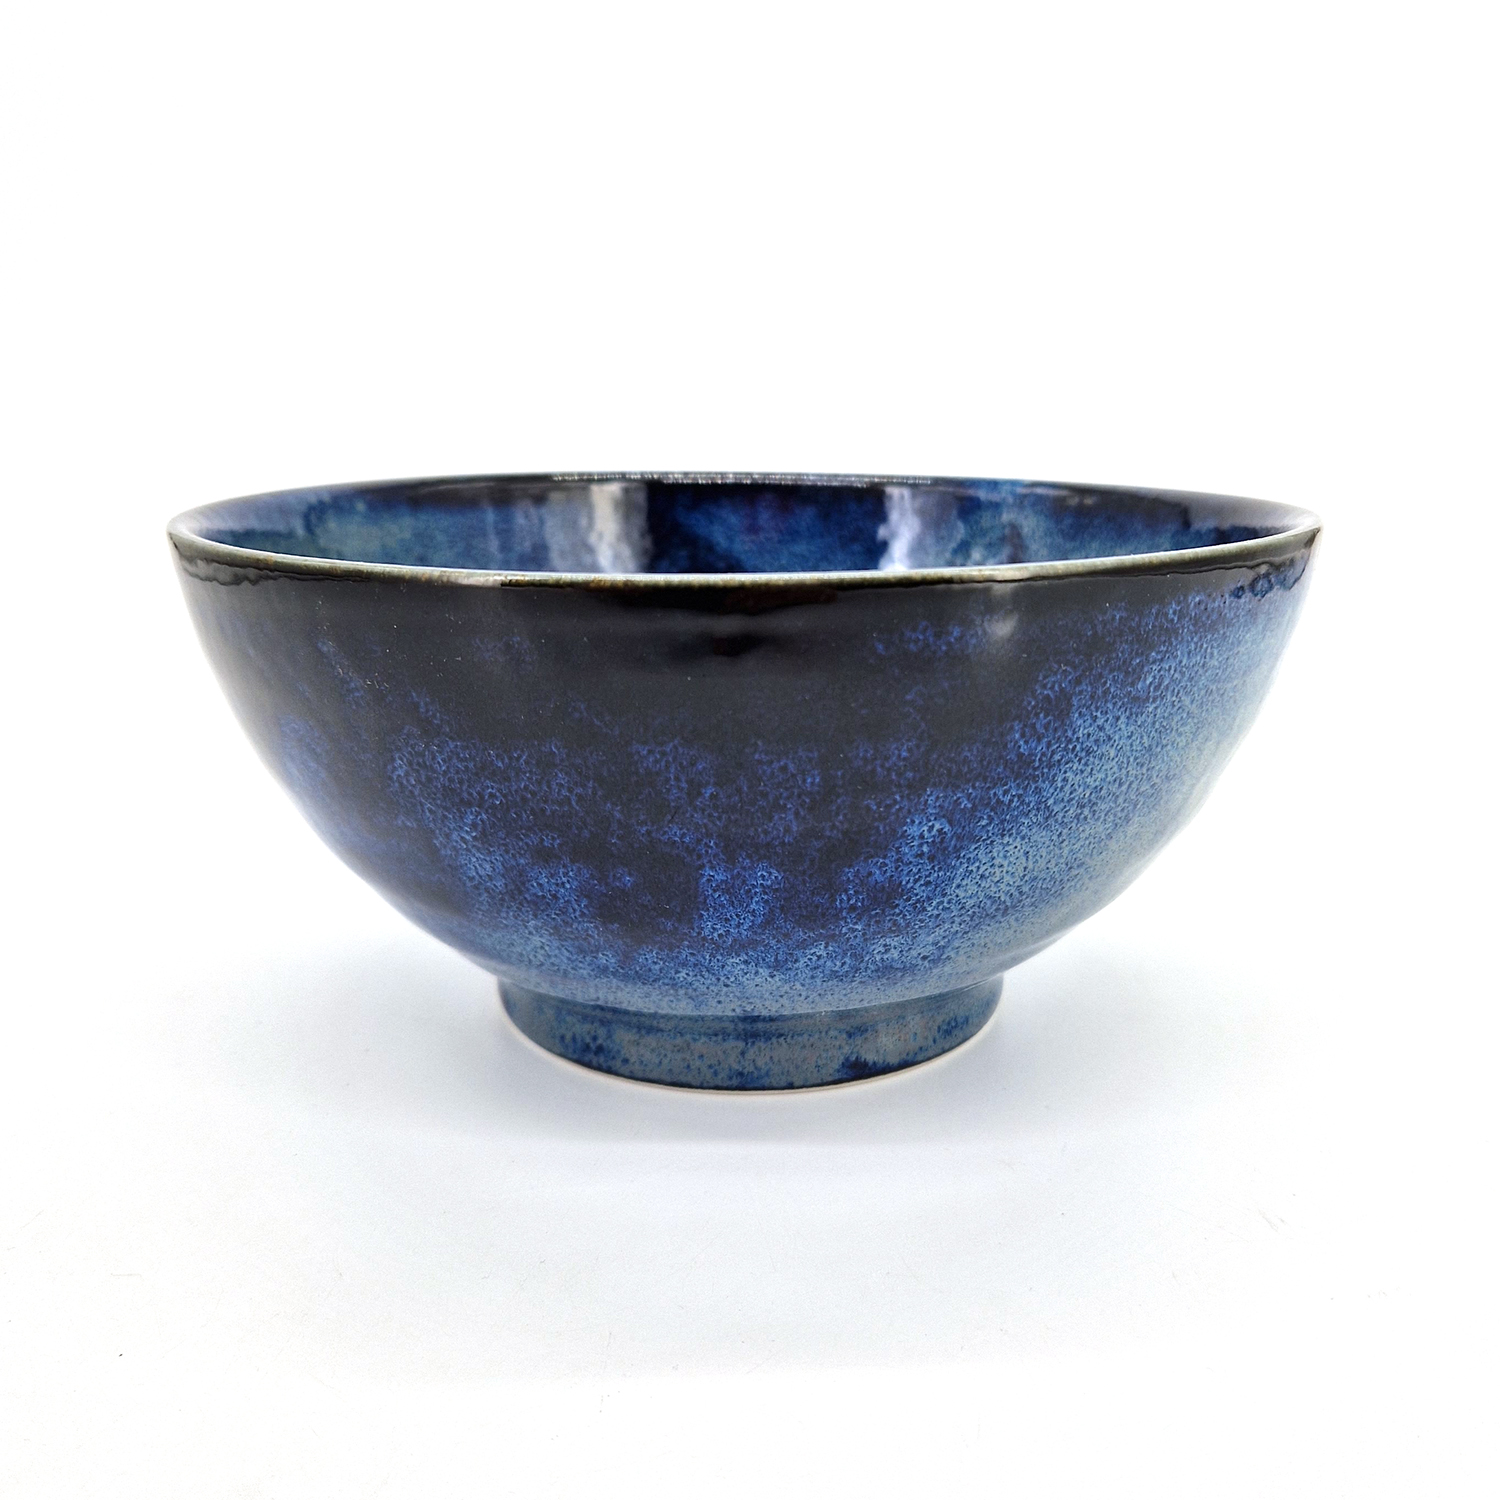 https://kyotoboutique.fr/68513/cuenco-japones-de-ceramica-para-ramen-azul-ao.jpg